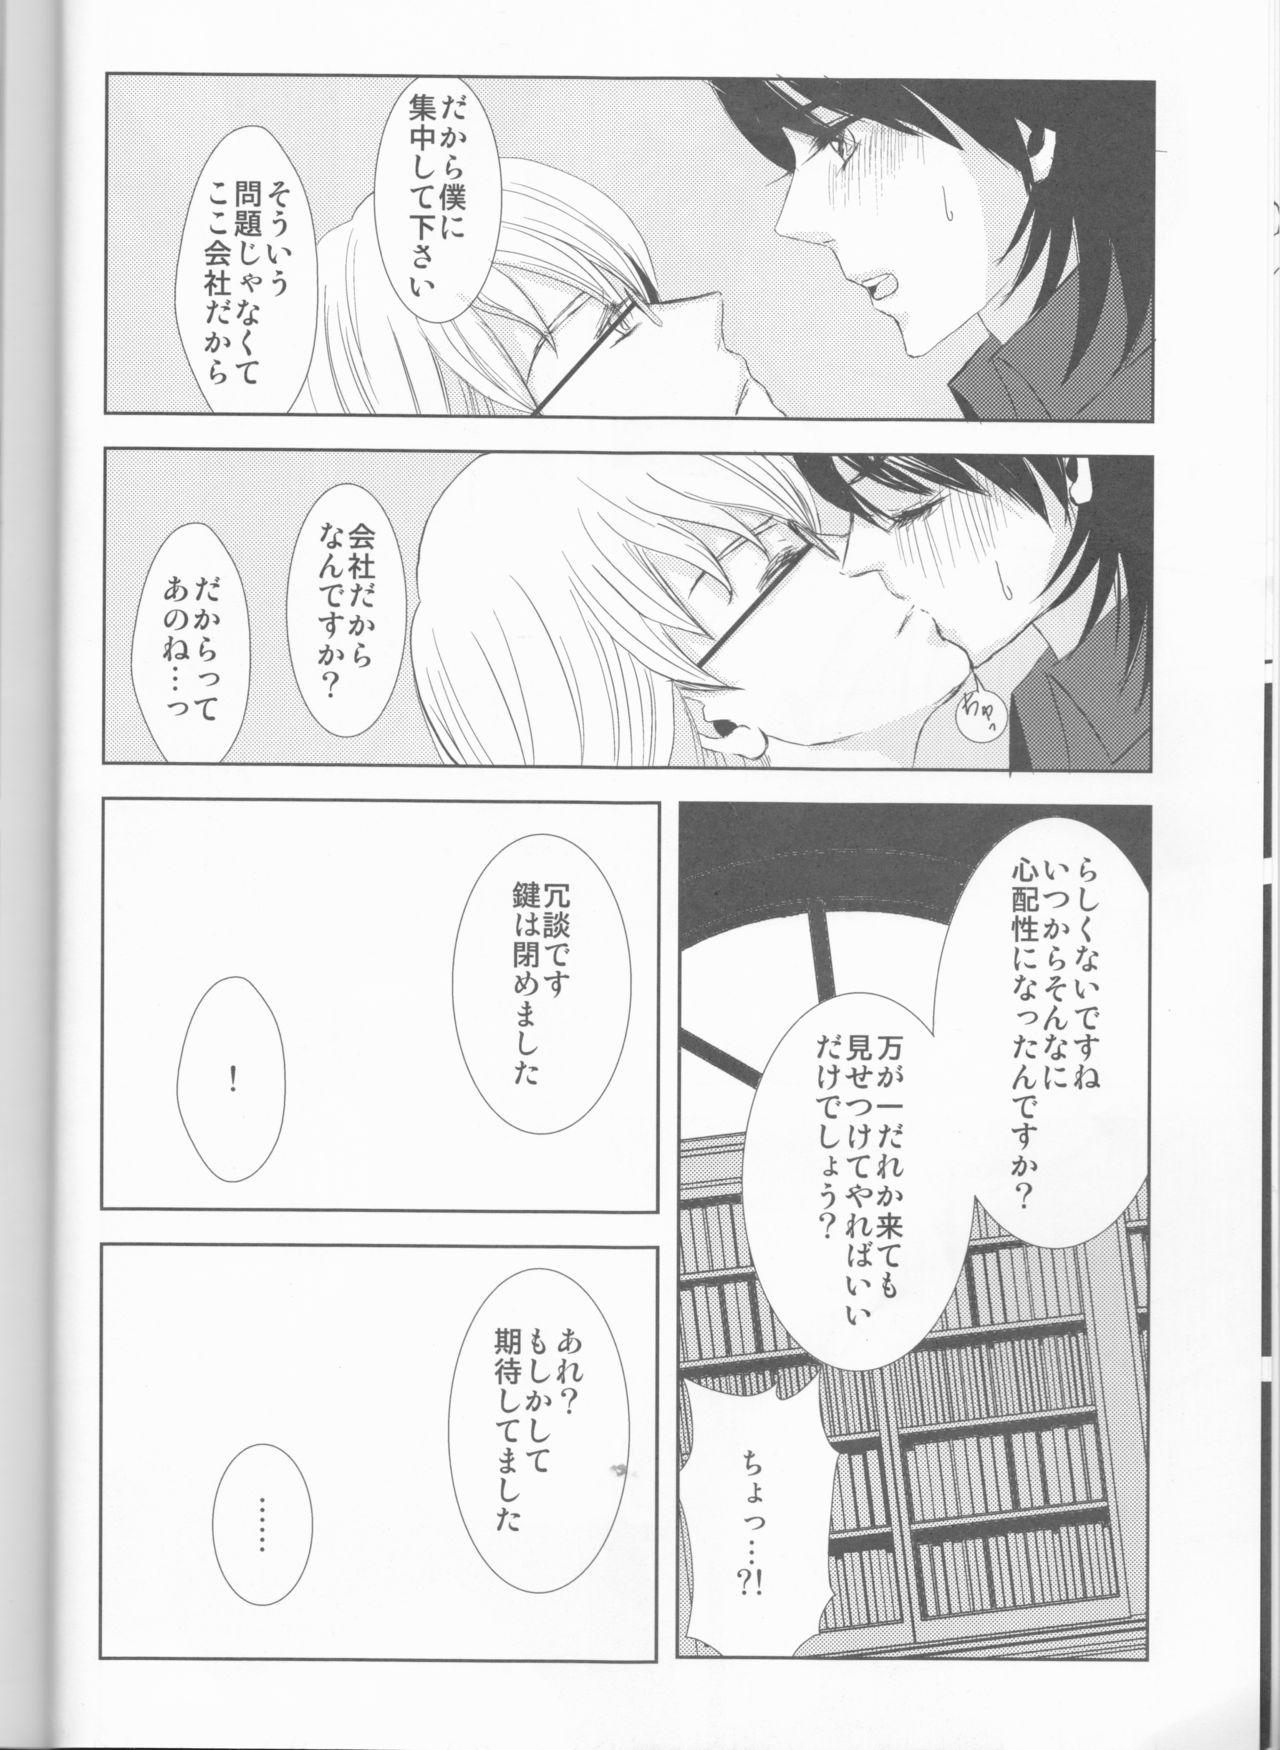 English Itsuka wa inaku naru kimi e - Tiger and bunny Short Hair - Page 7